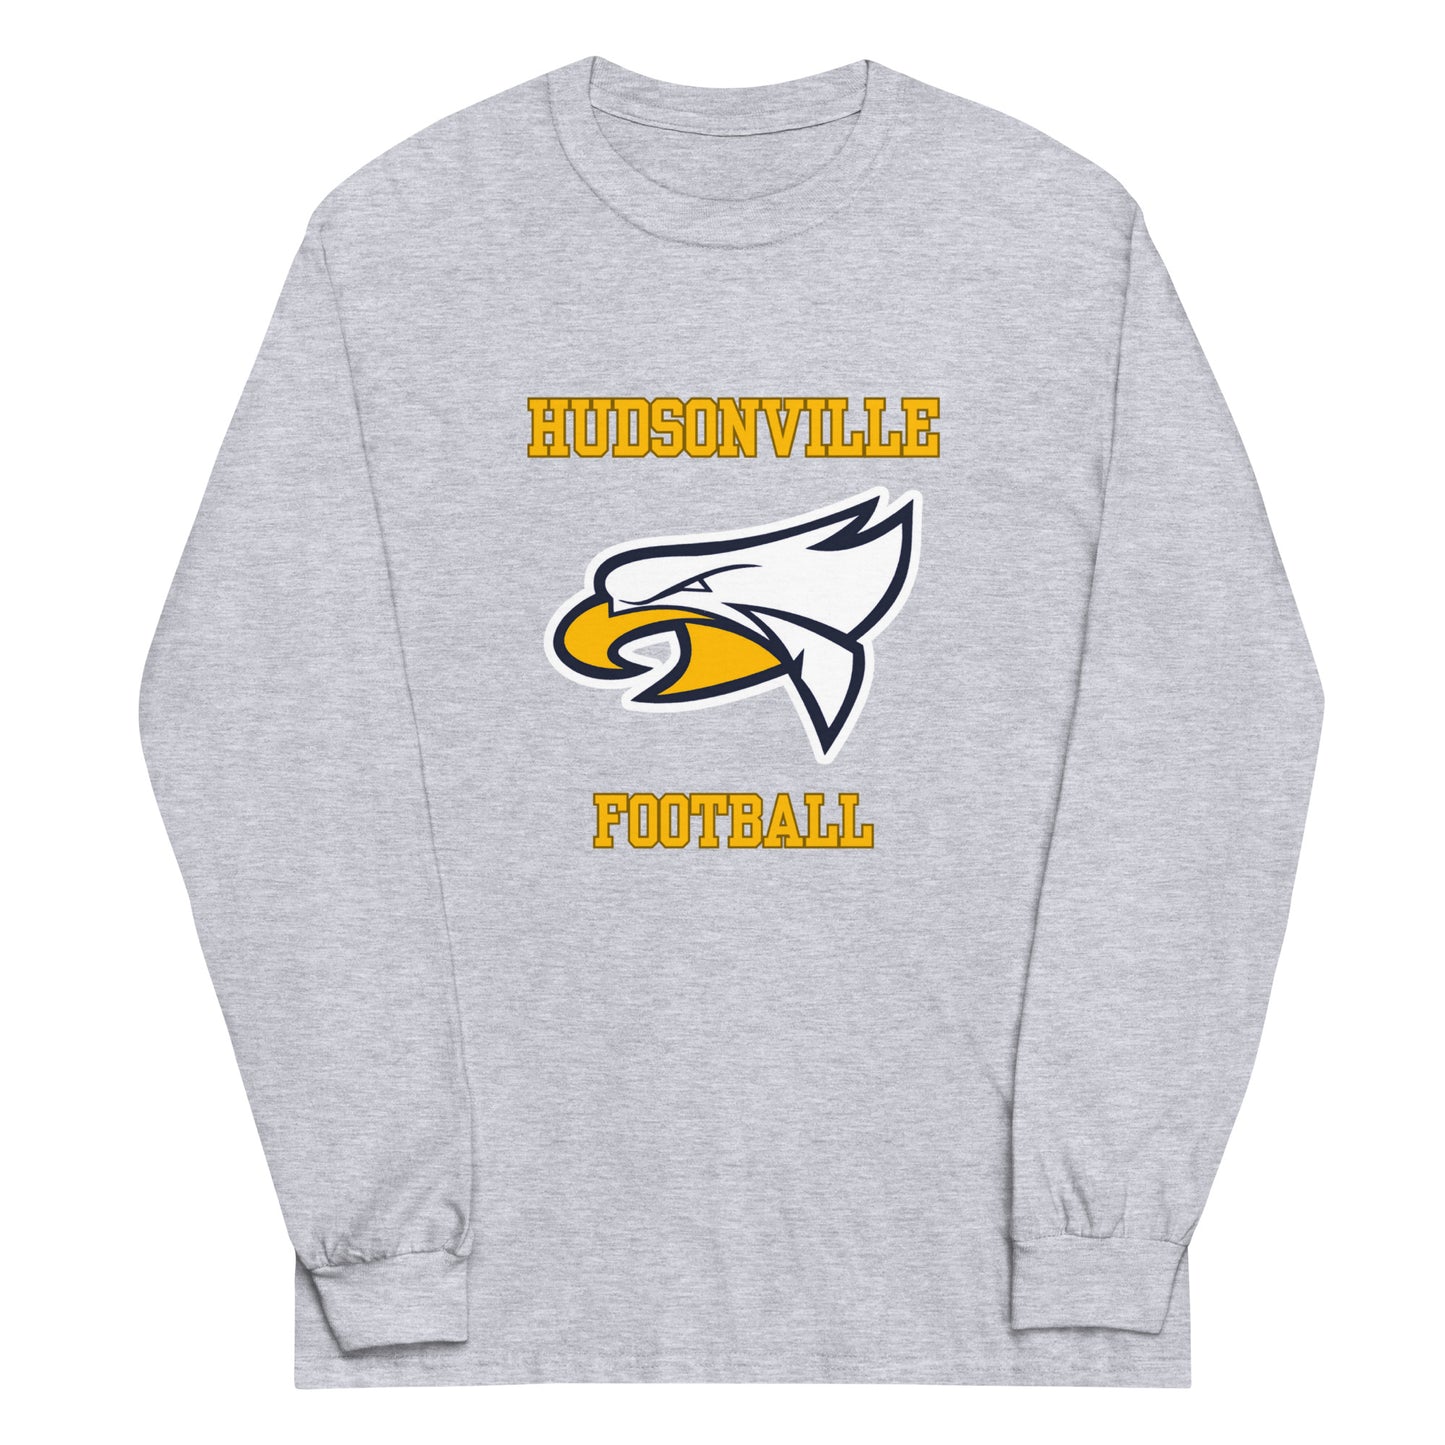 Hudsonville Football Men’s Long Sleeve Shirt